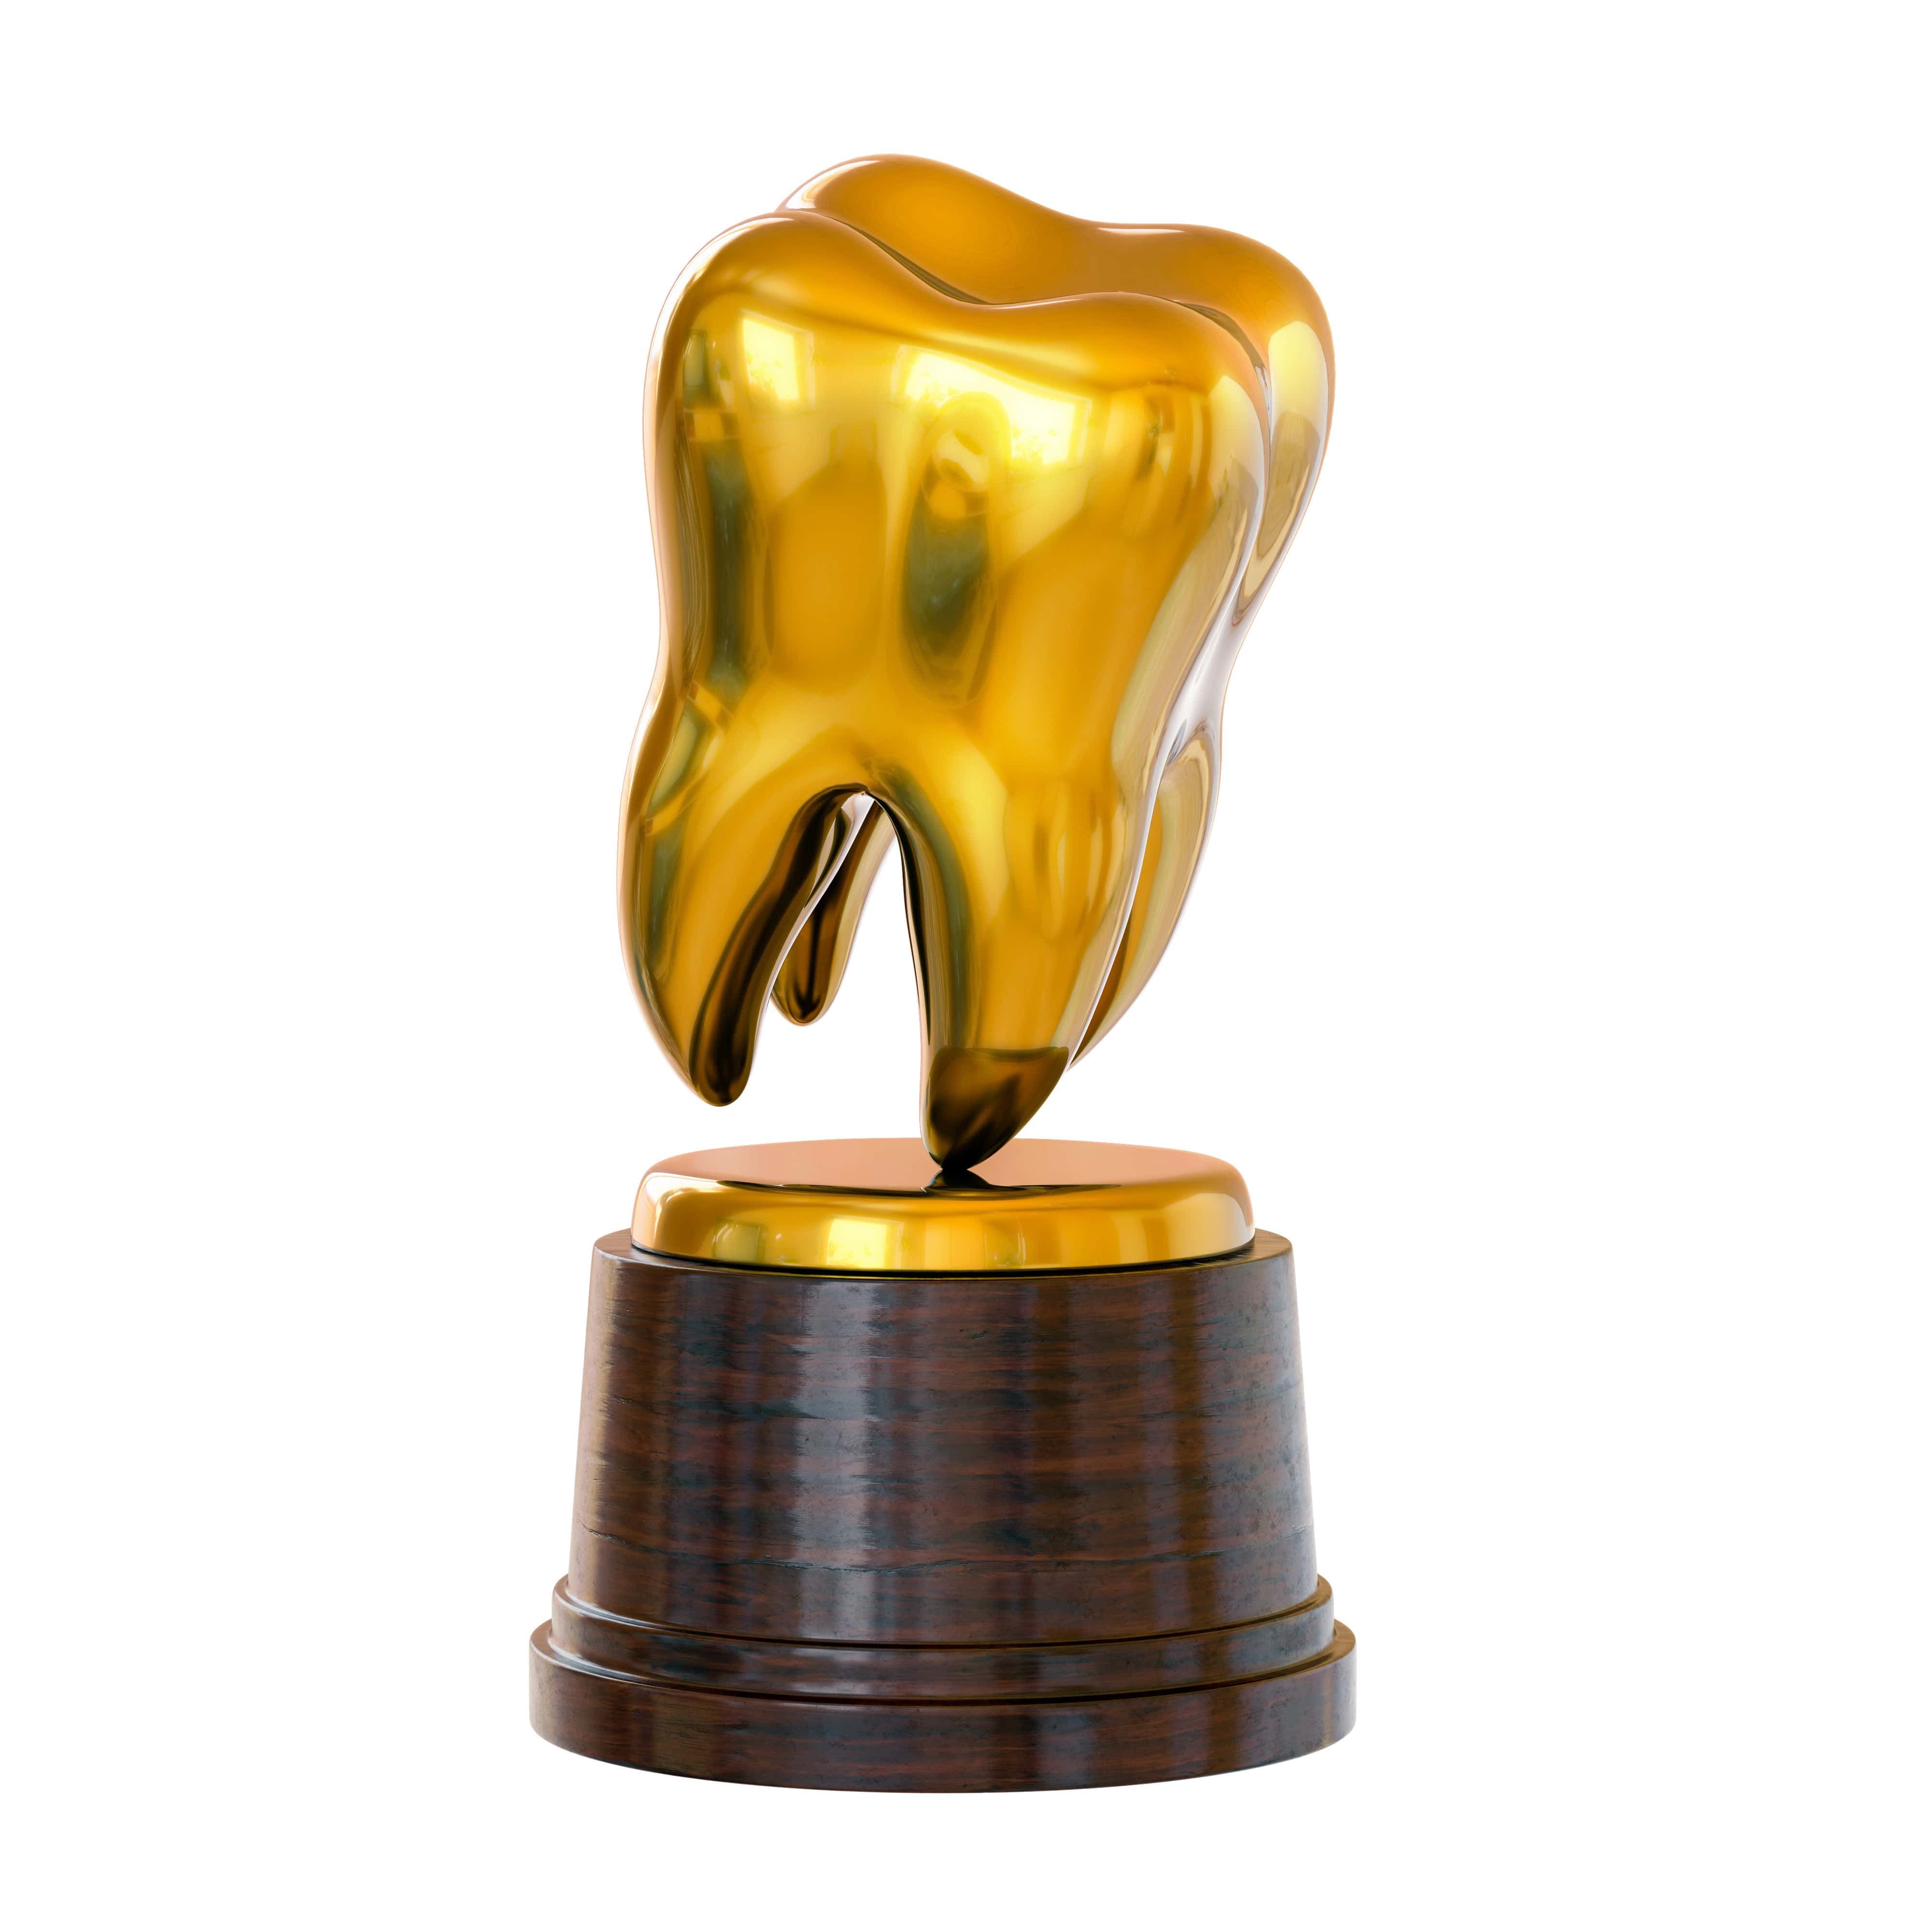 Golden tooth trophy